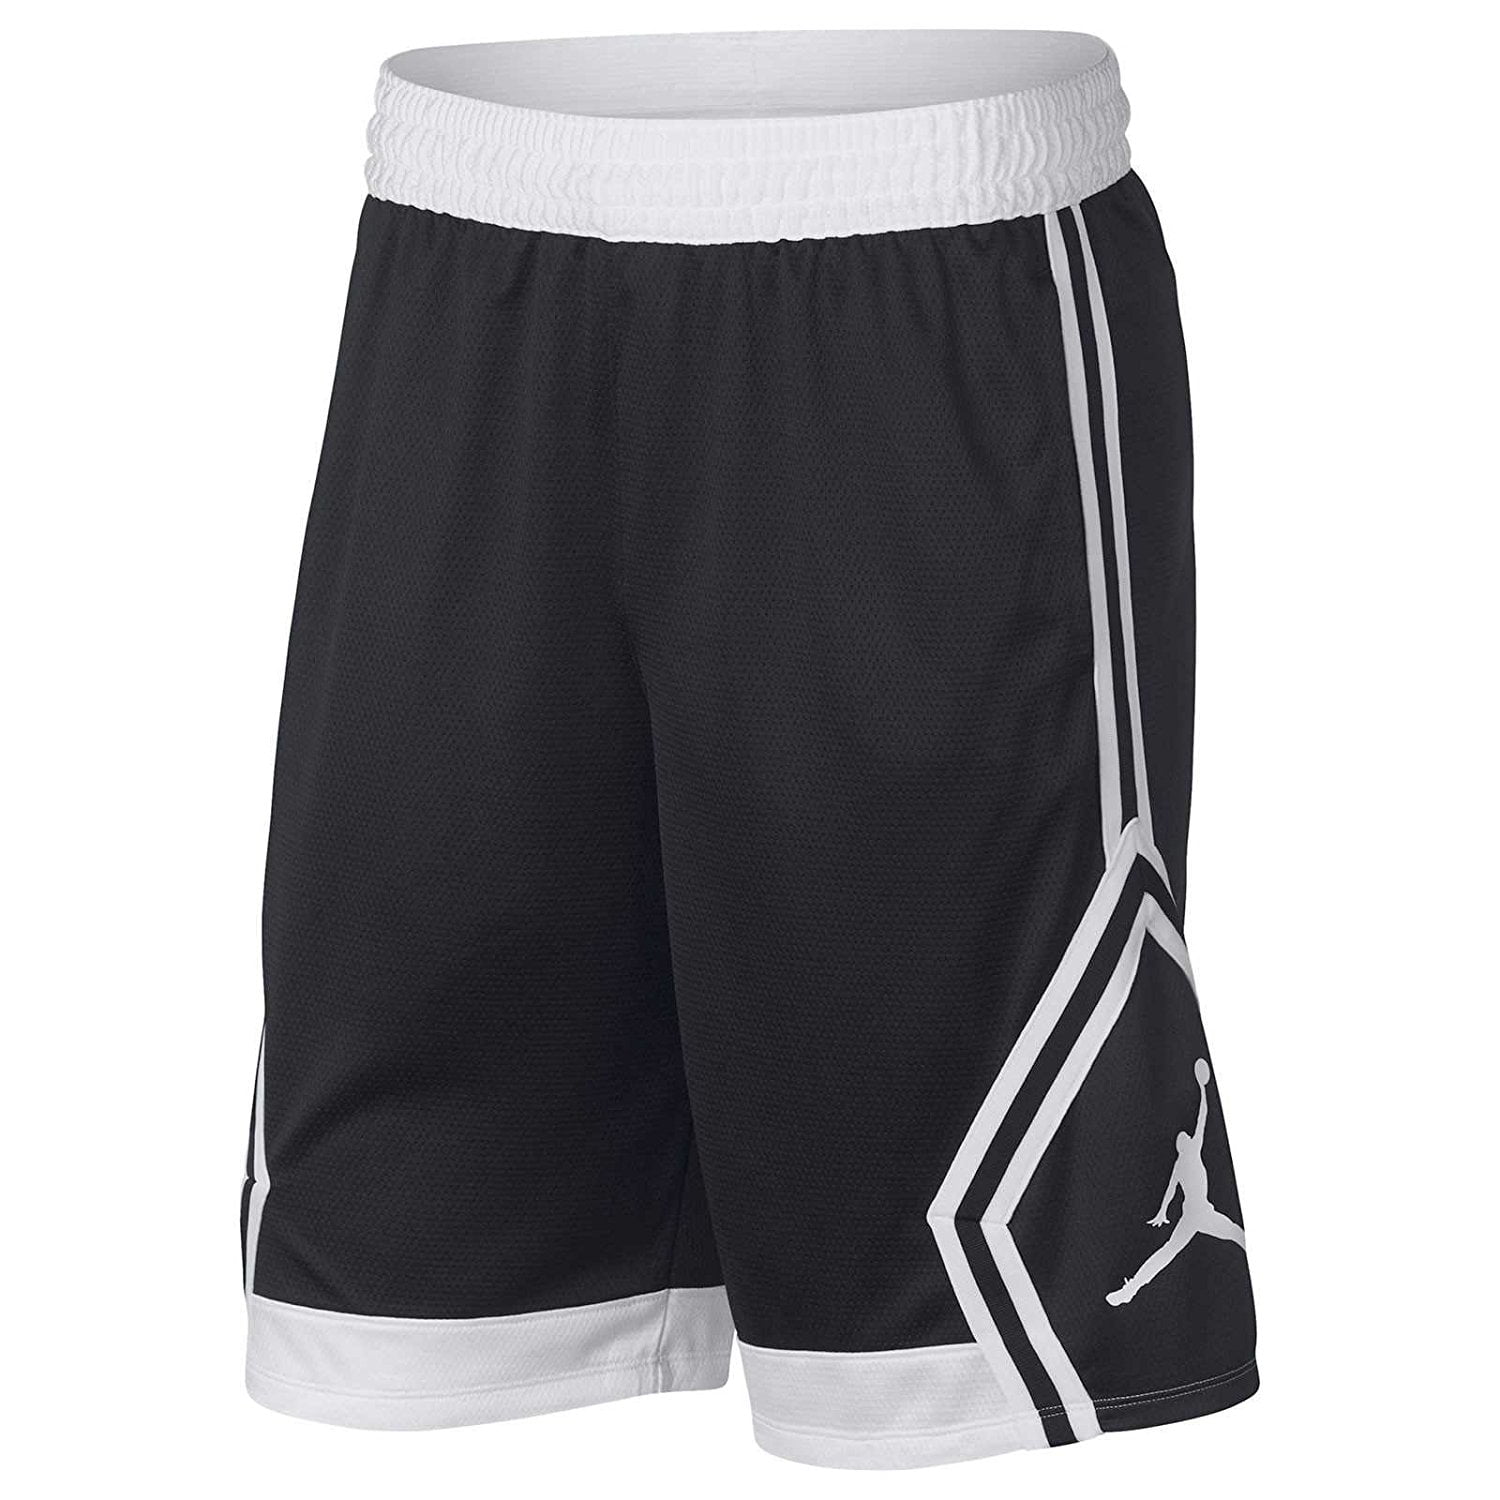 black and white jordan shorts